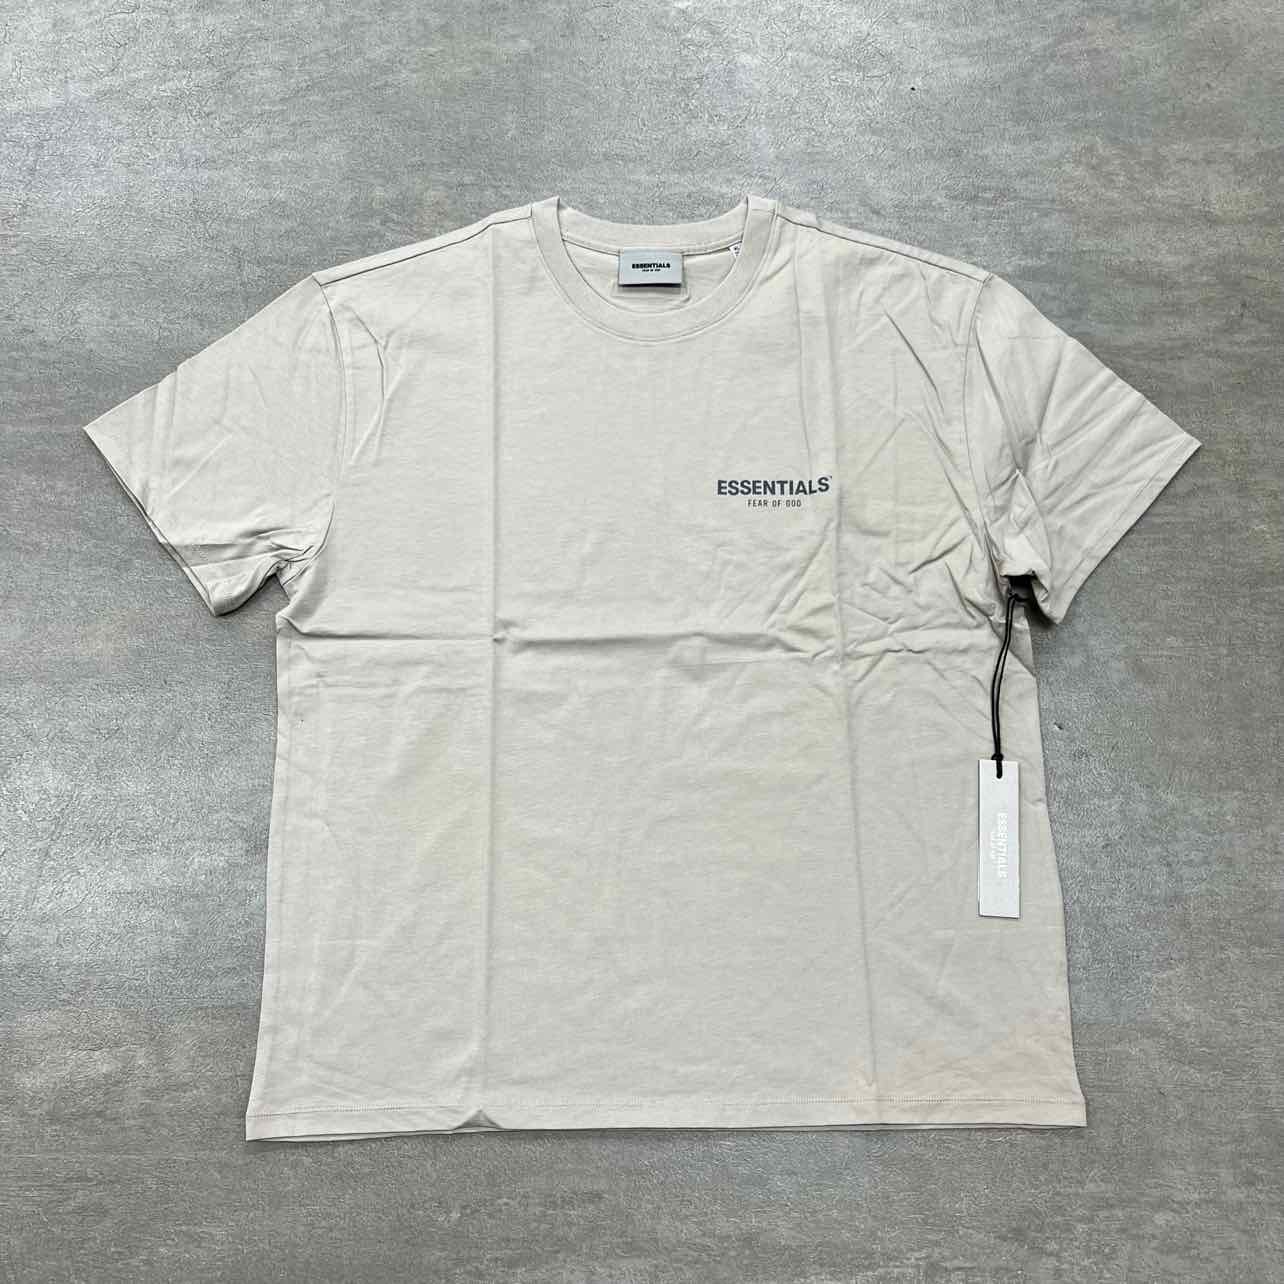 Fear of God T-Shirt &quot;ESSENTIALS&quot; Tan New Size L